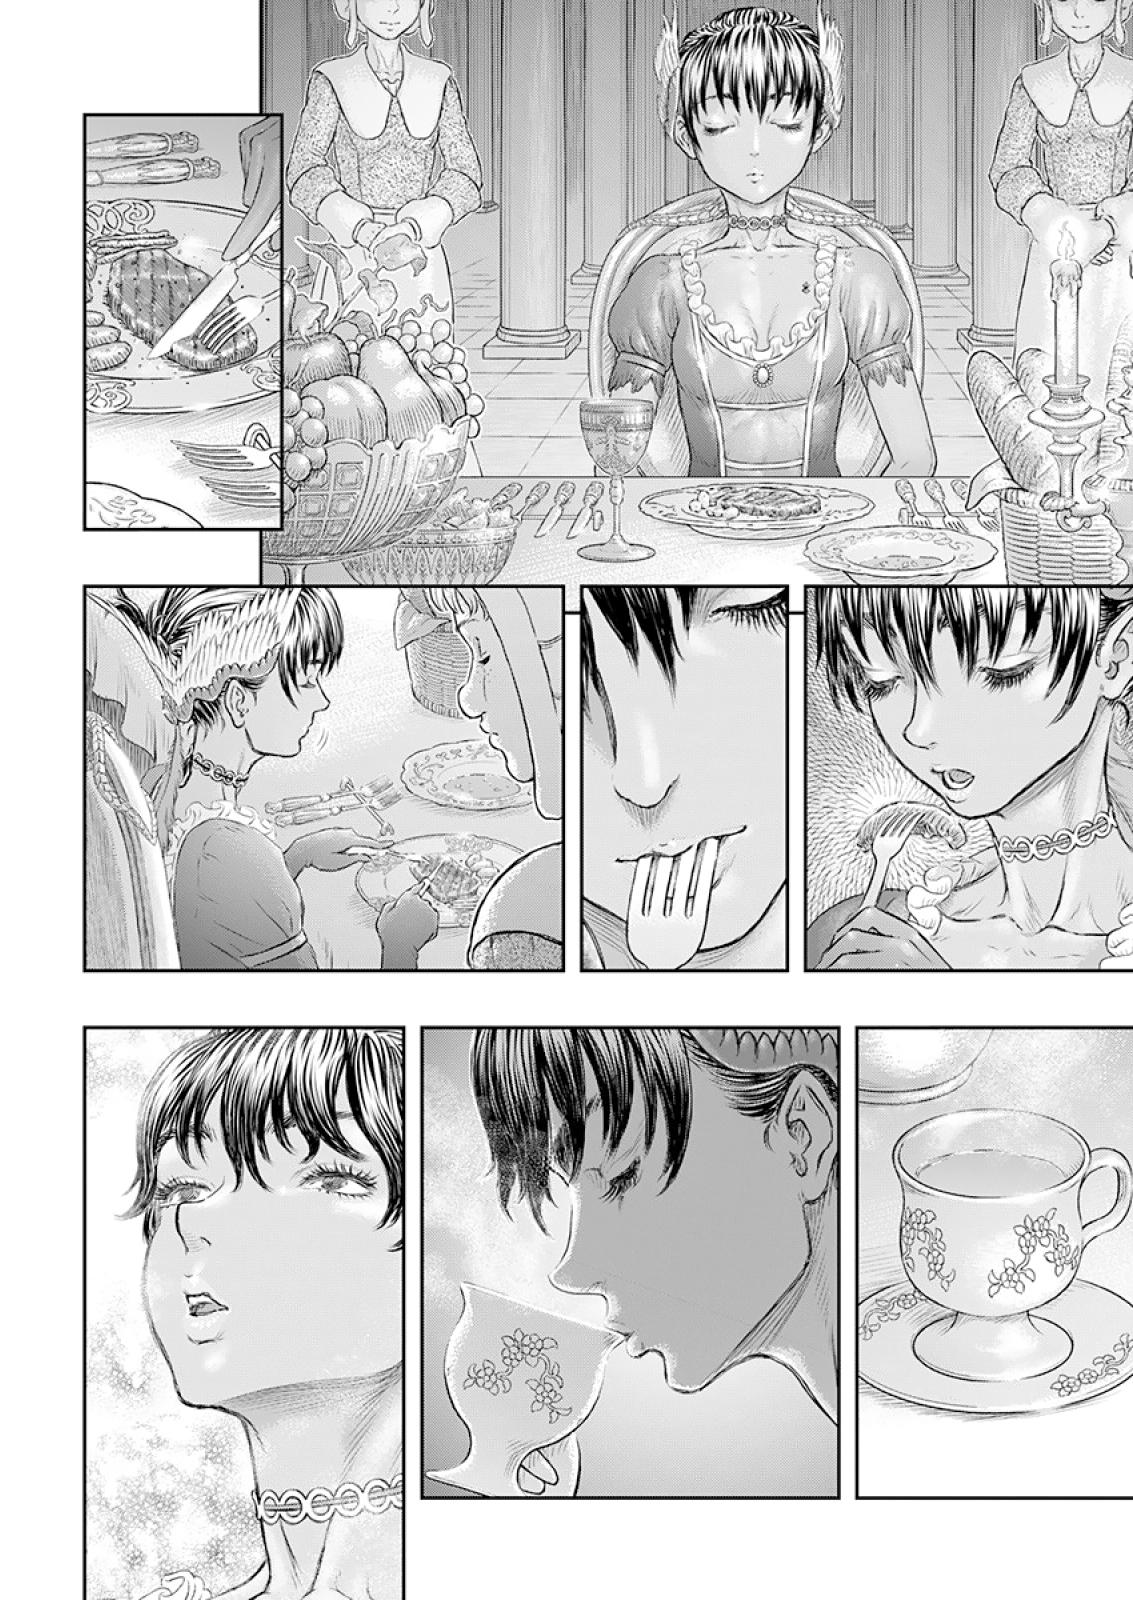 Berserk Manga Chapter 372 image 11